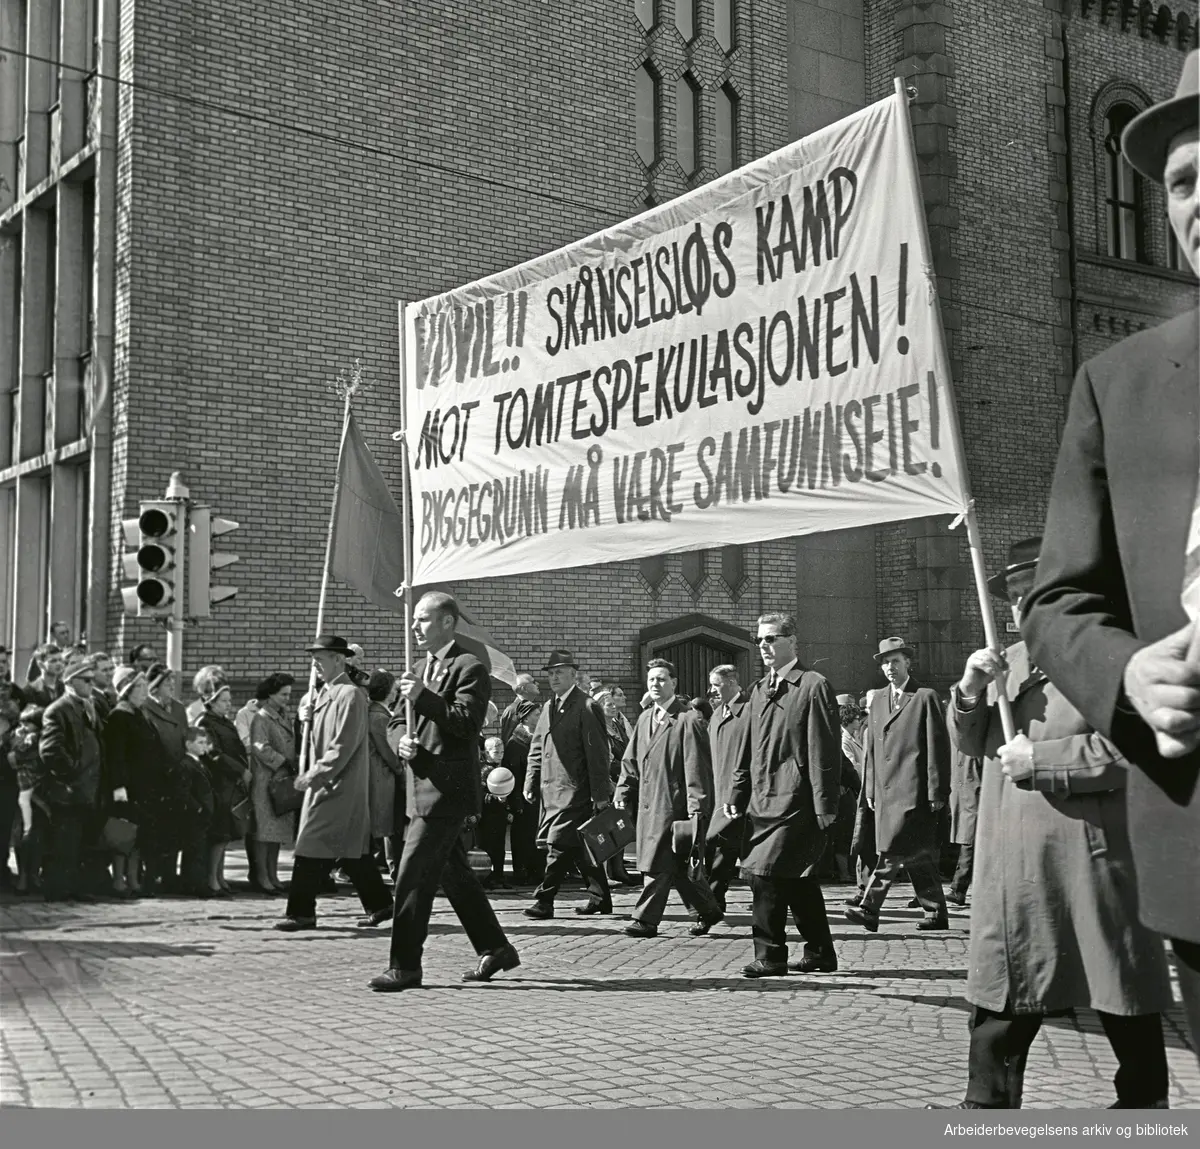 1. mai 1964 i Oslo.Demonstrasjonstoget i Karl Johans gate.Parole: Vi vil!! Skånselsløs kamp mot tomtespekulasjonen! Byggegrunn må være samfunnseie!